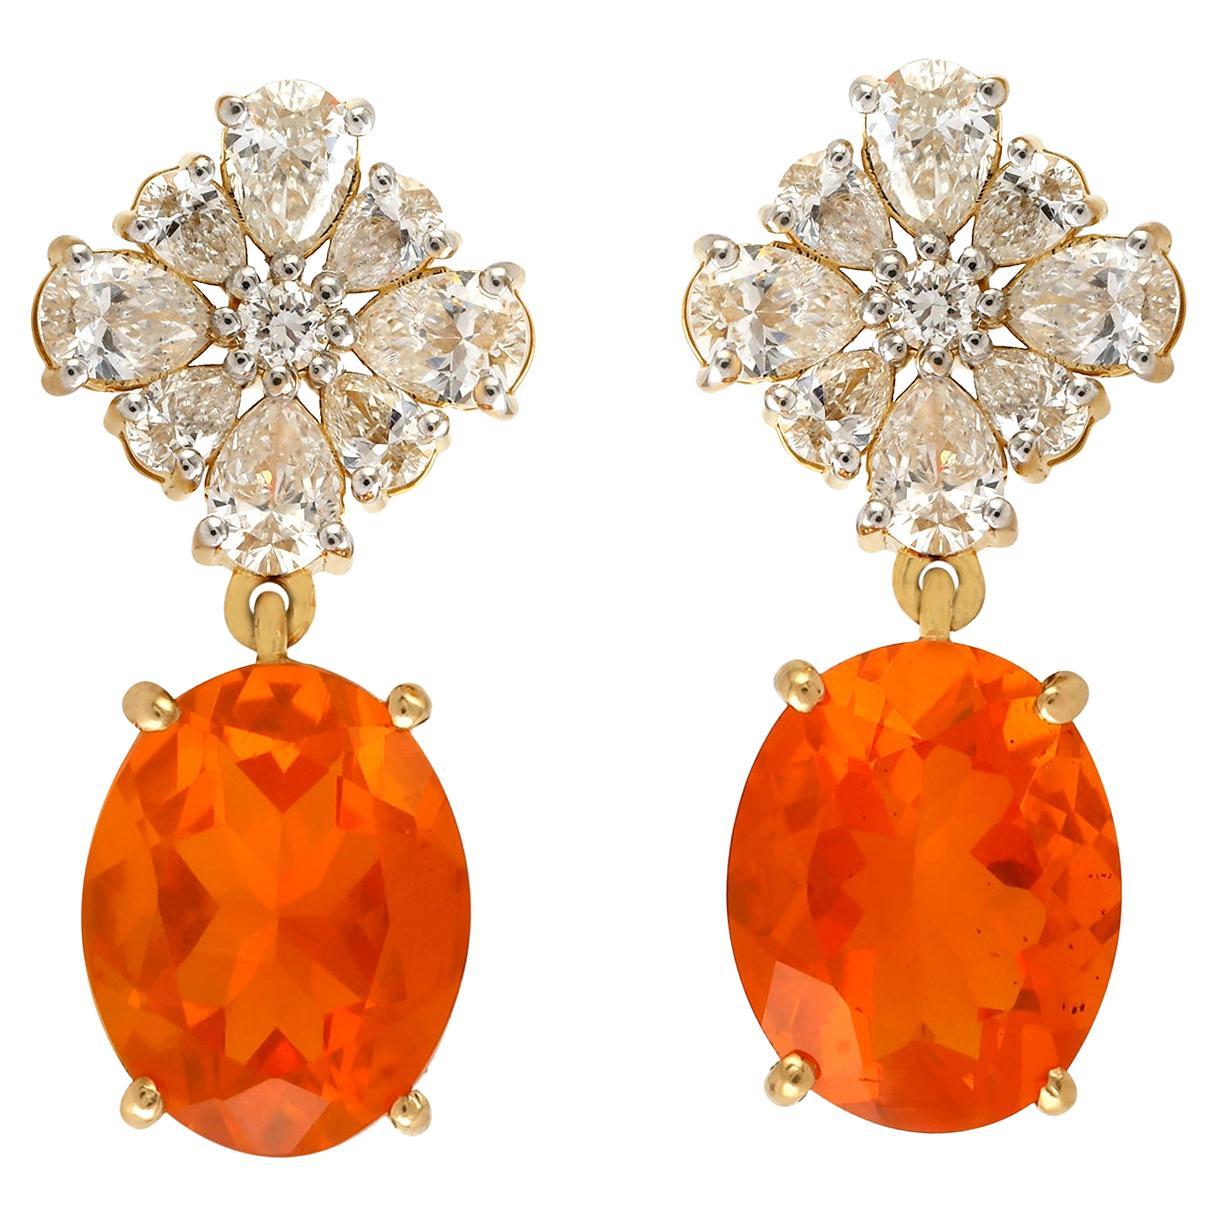 Ovale Feueropal-Ohrringe aus 18 Karat Gelbgold mit Diamanten akzentuiert